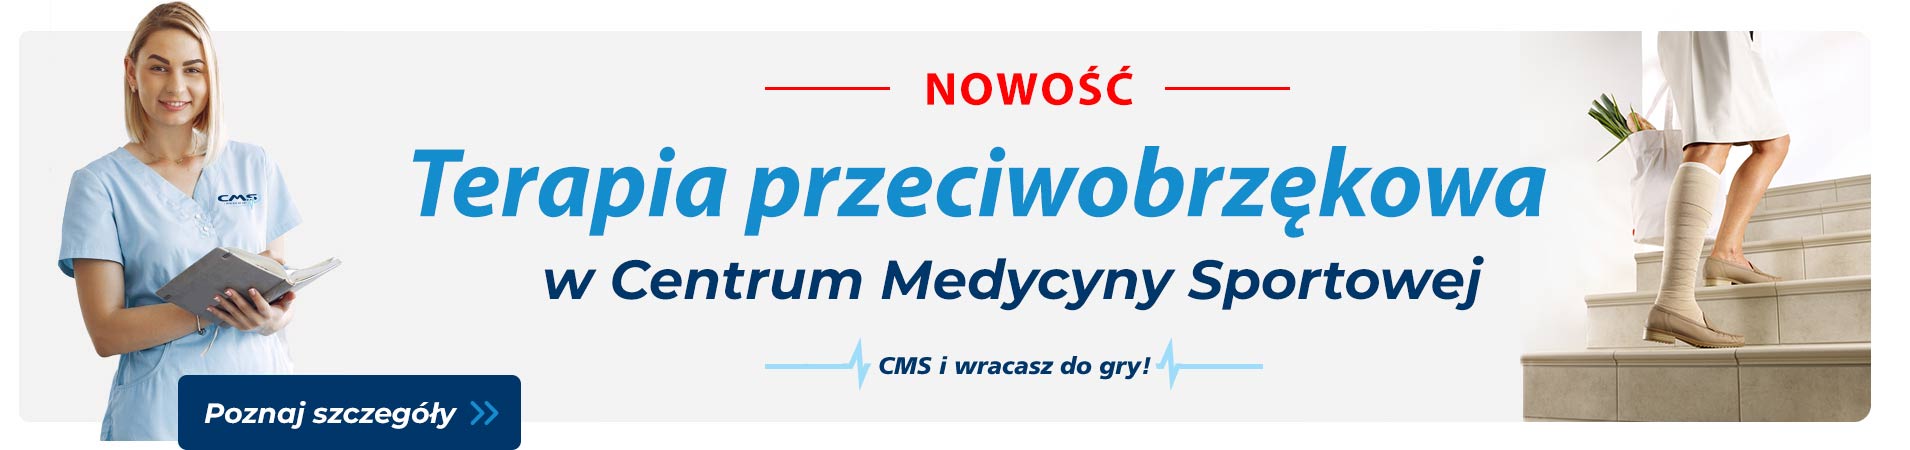 Rehabilitacja po COVID-19 w CMS Warszawa